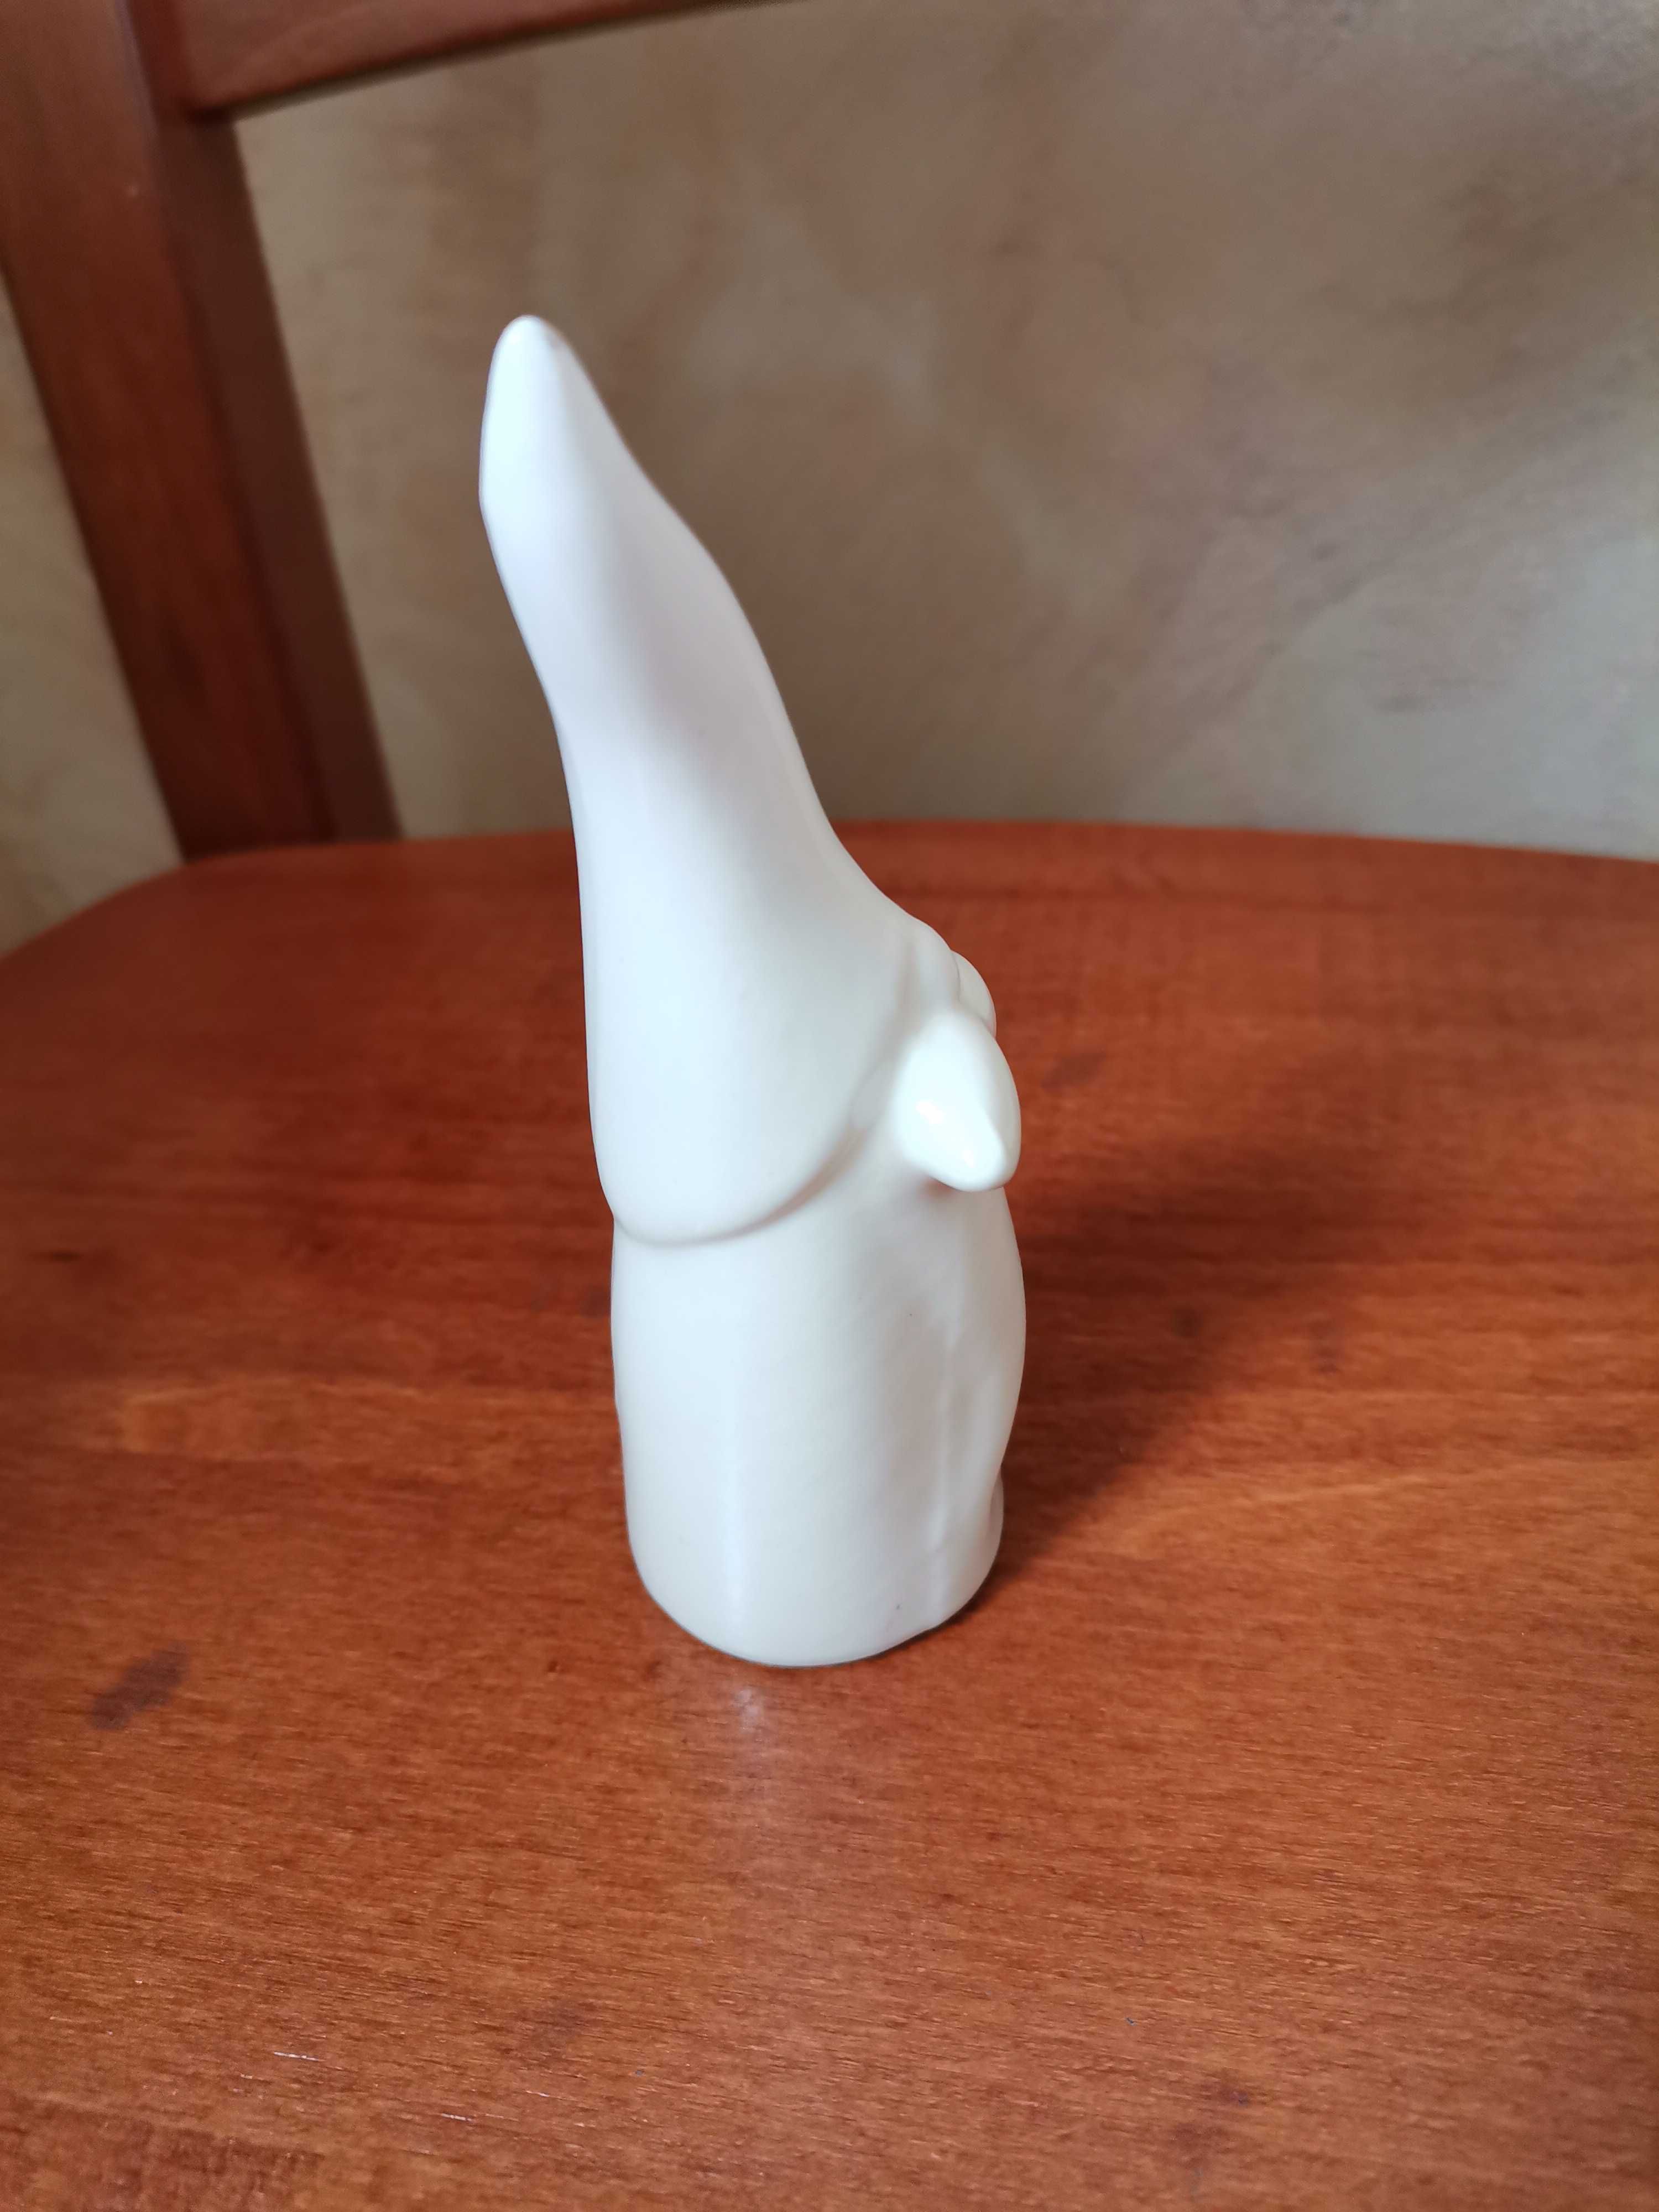 Biała ceramiczna figurka skrzata